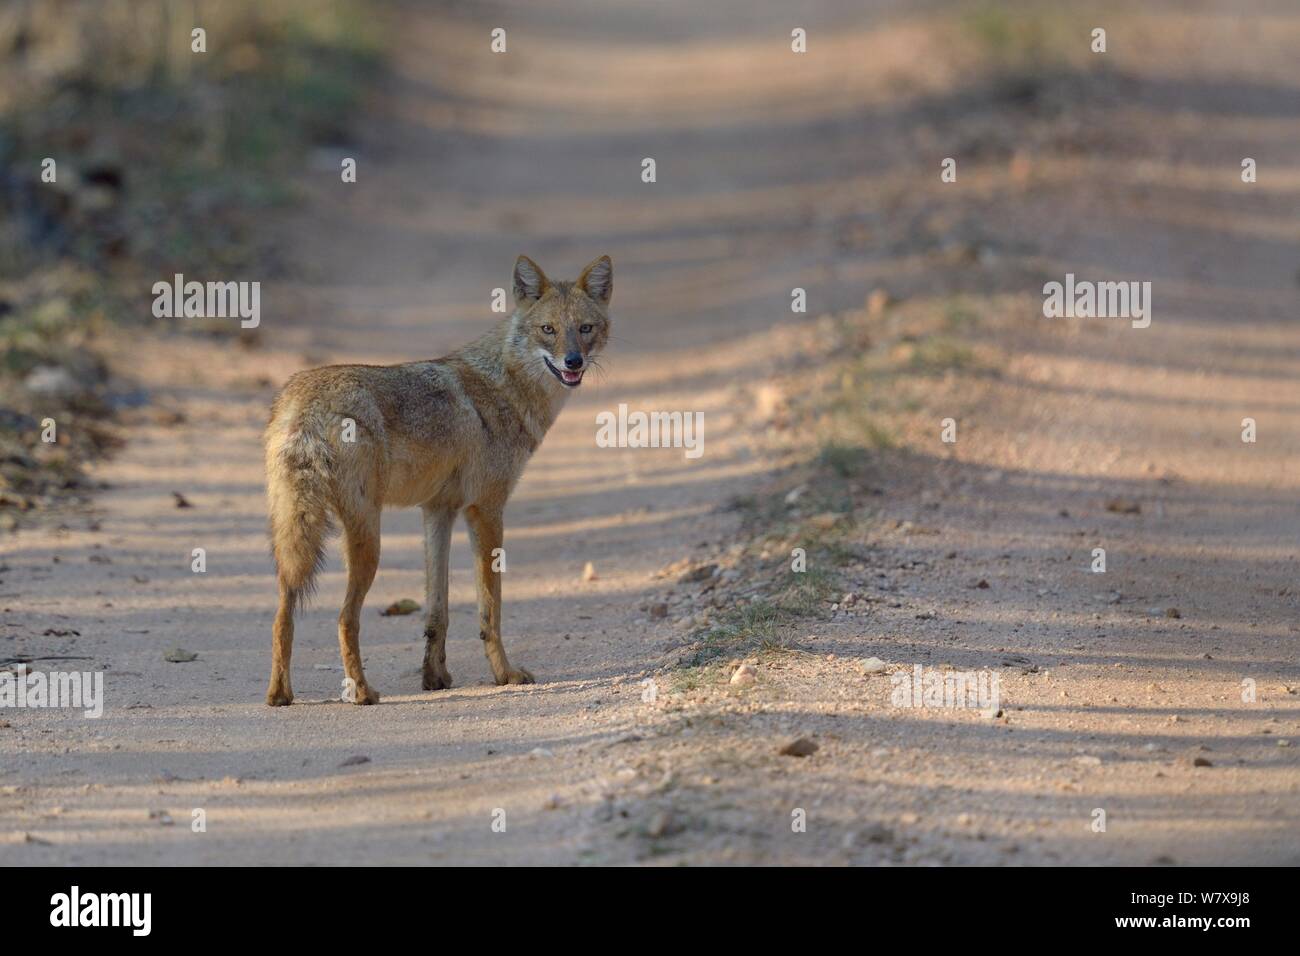 Le chacal doré (Canis aureus) alerte permanent sur la voie, Pench National Park, le Madhya Pradesh, en Inde. Banque D'Images